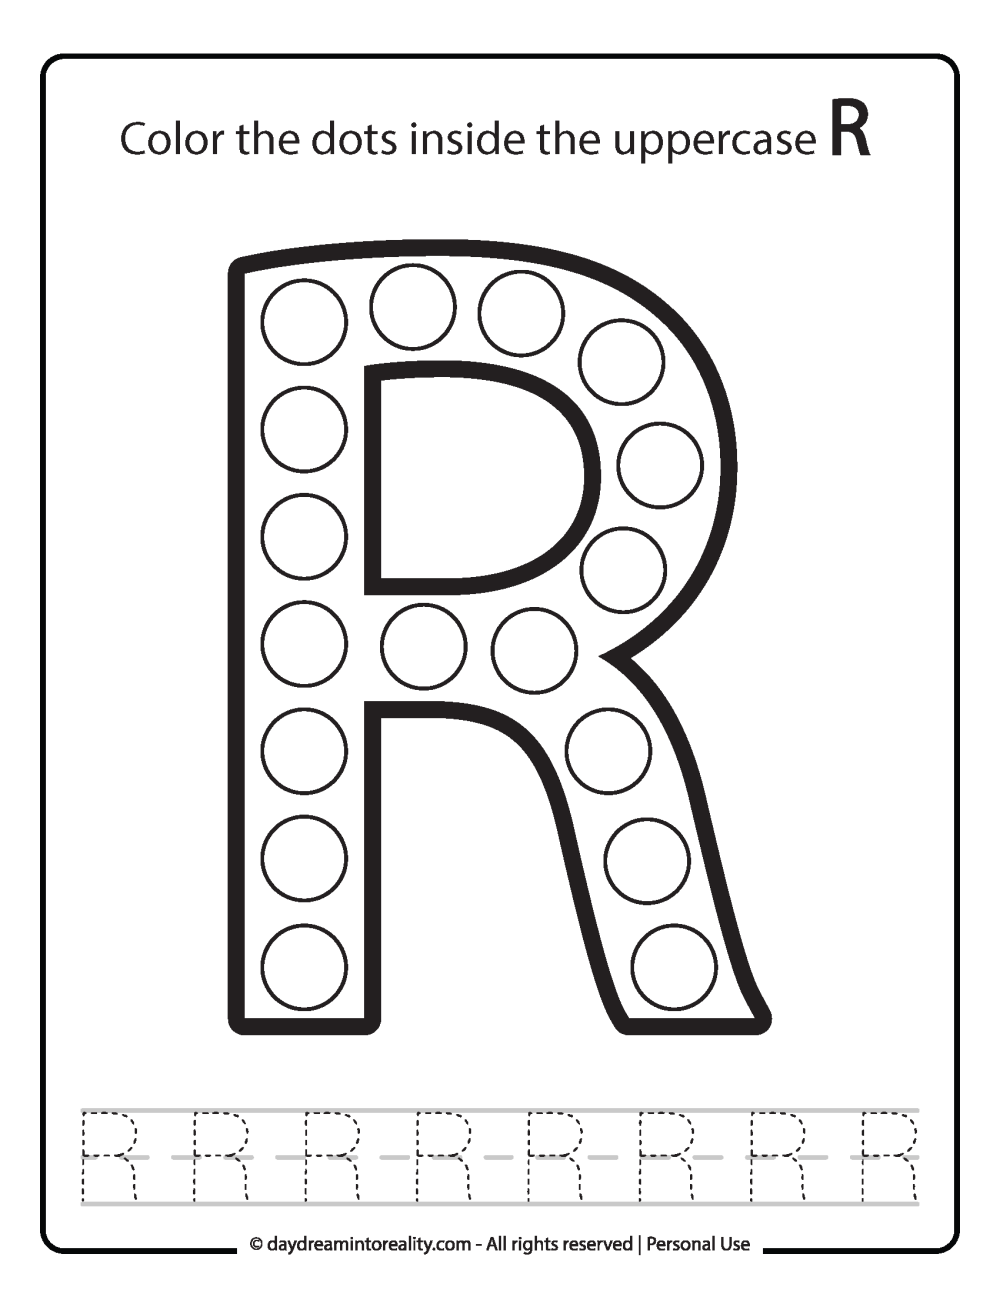 Uppercase "R" Dot Marker Worksheet Free Printable activity for kids (preschool, kindergarten)